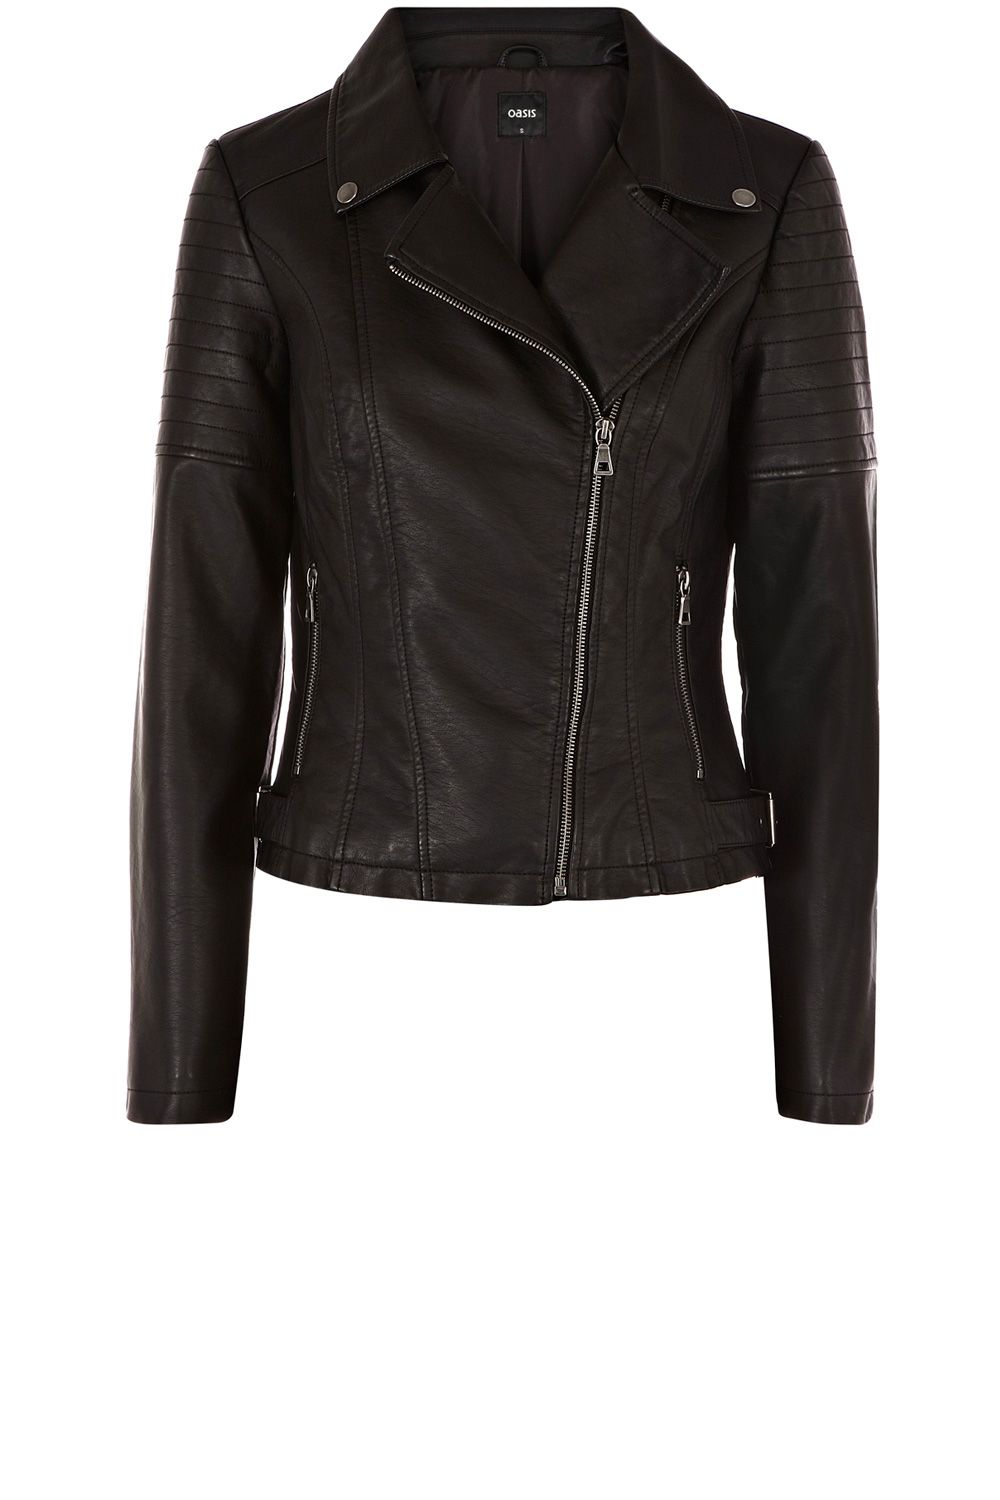 Oasis Becky Buckle Faux Leather Biker Jacket in Black | Lyst